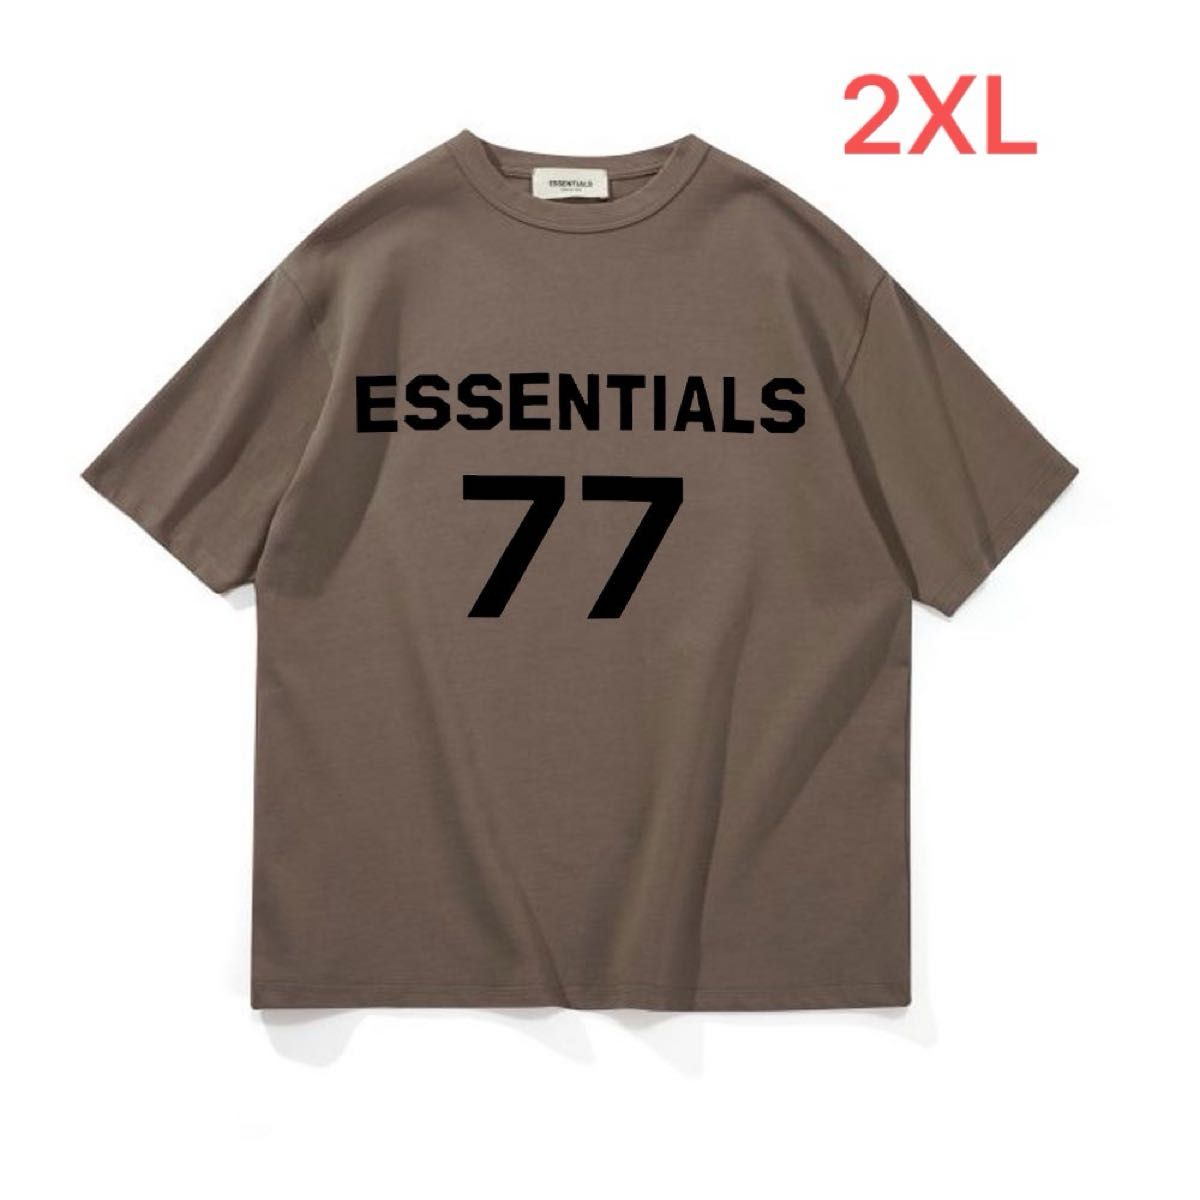 Tシャツ ESSENTIALS エッセンシャルズ アイボリー2XL TシャツT15 ブラウン2XL